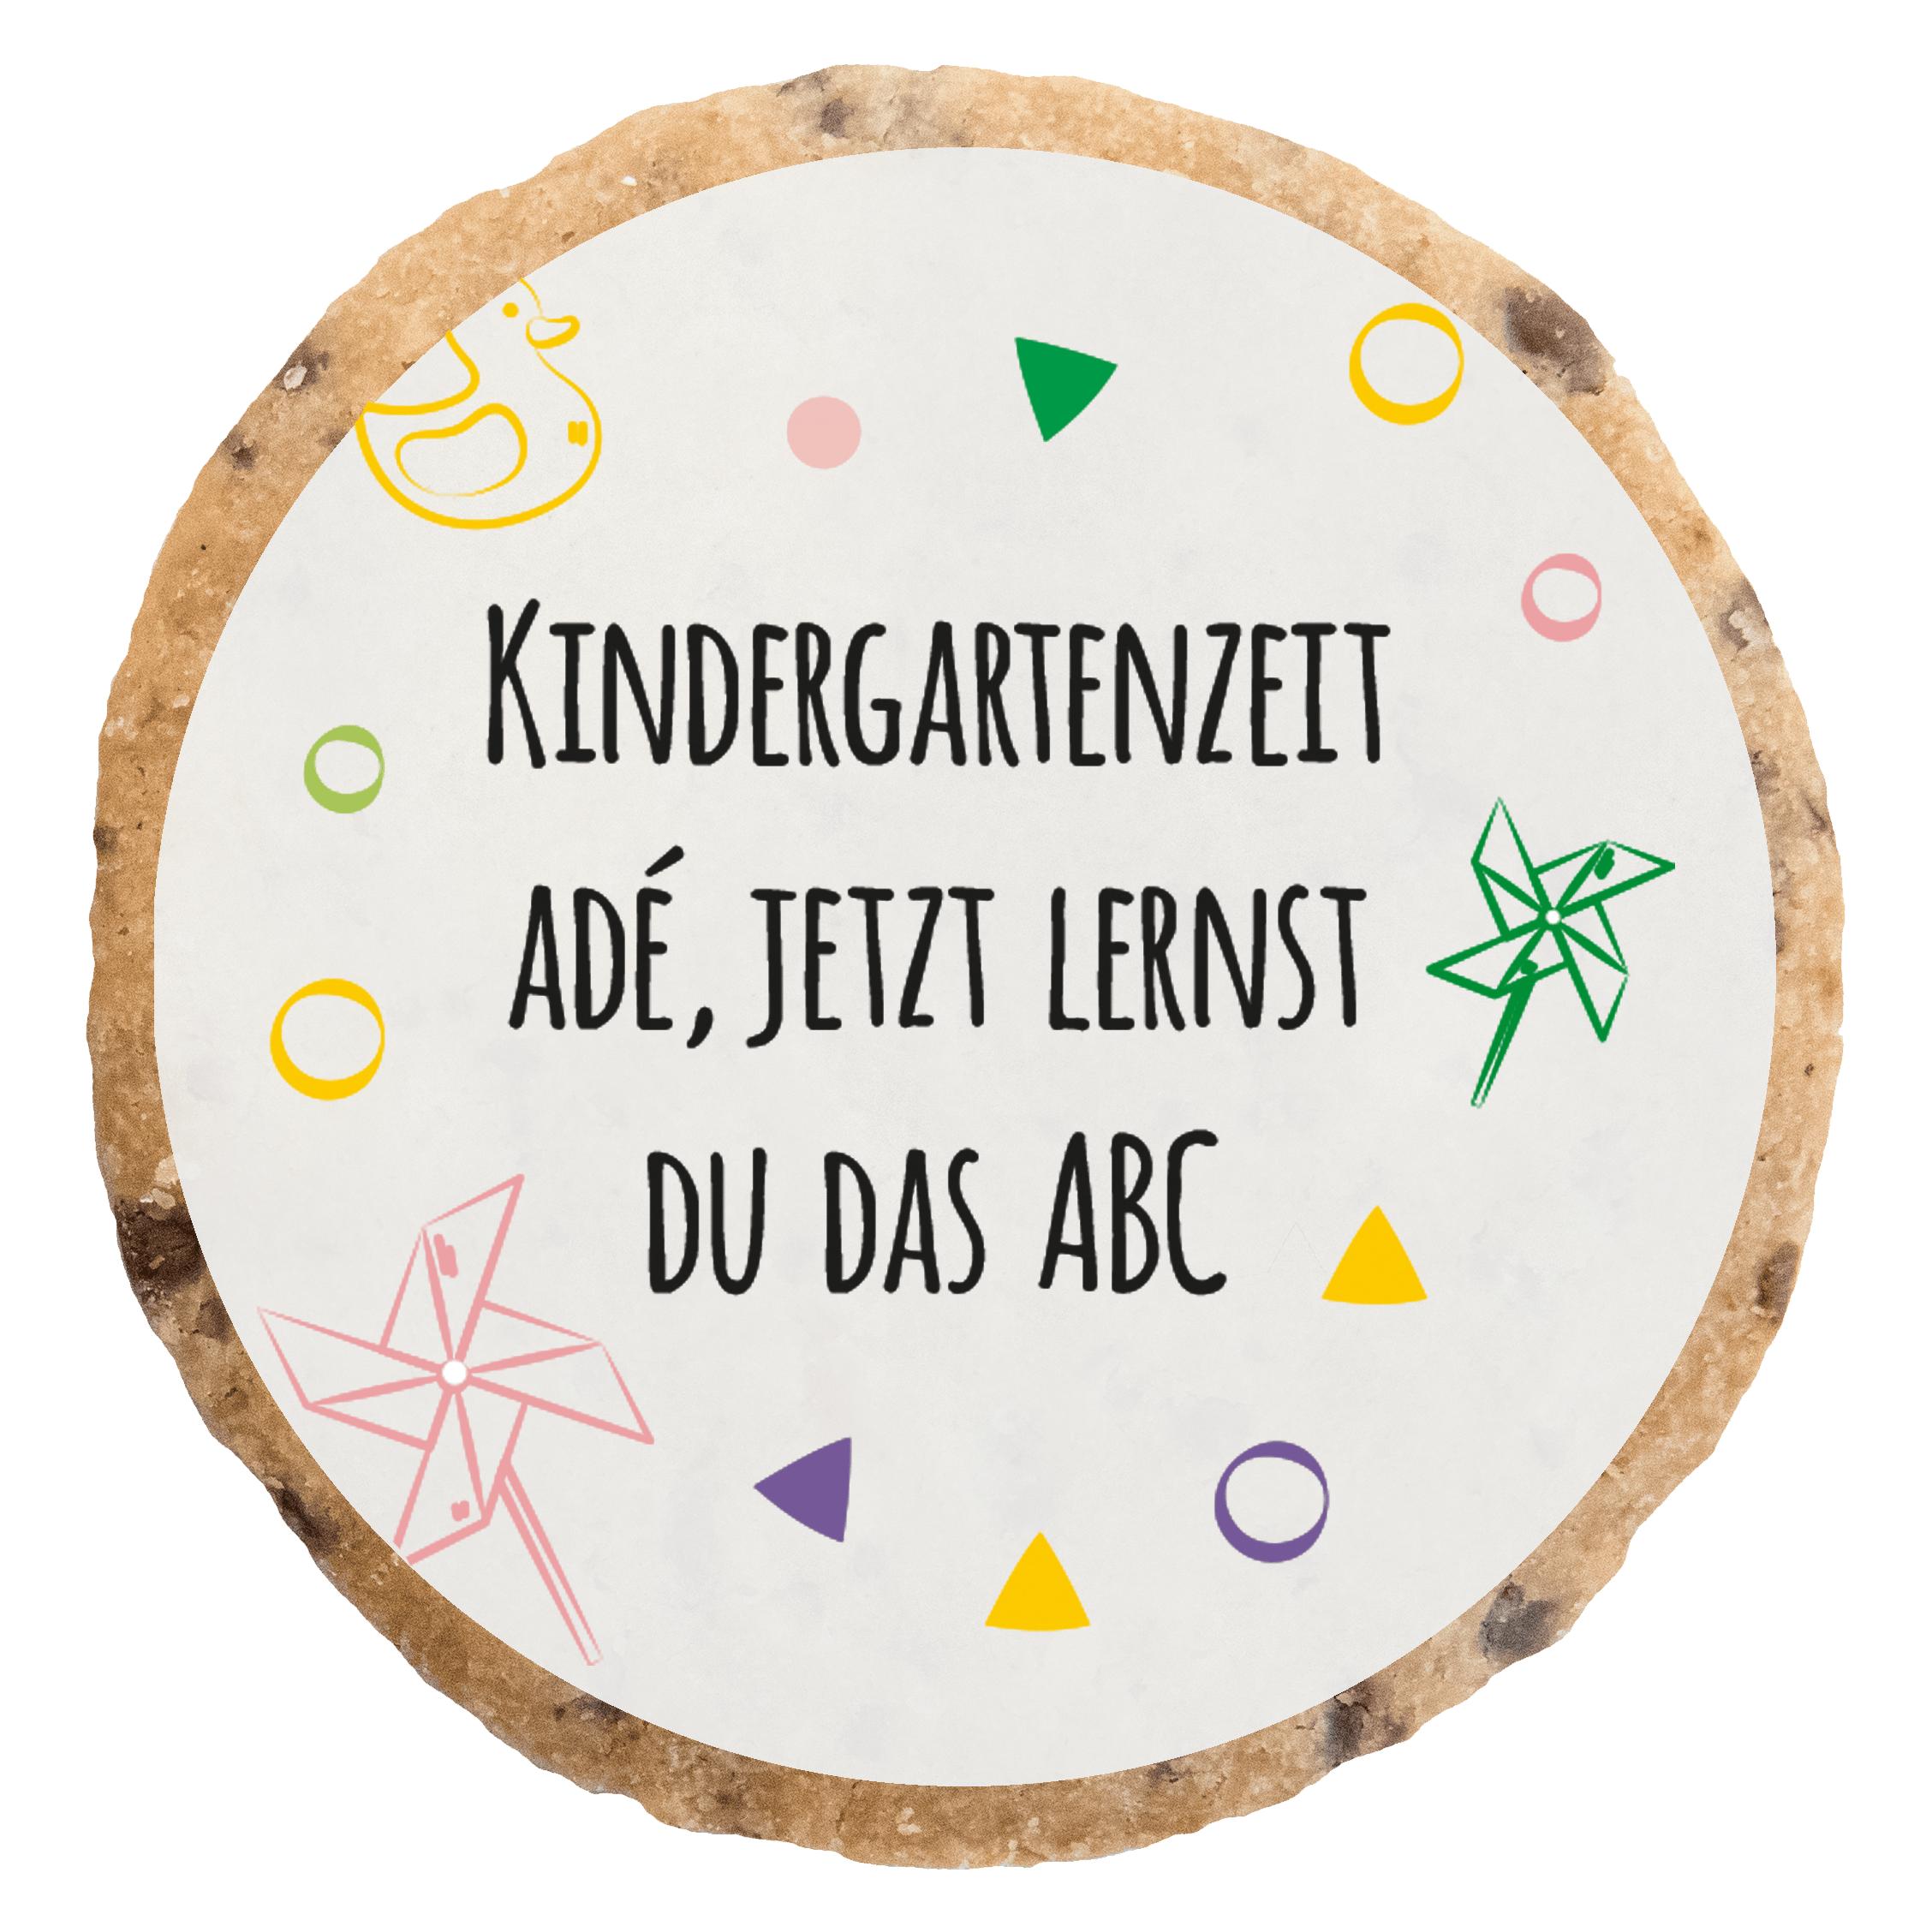 "Kindergartenzeit Ade 2" MotivKEKS